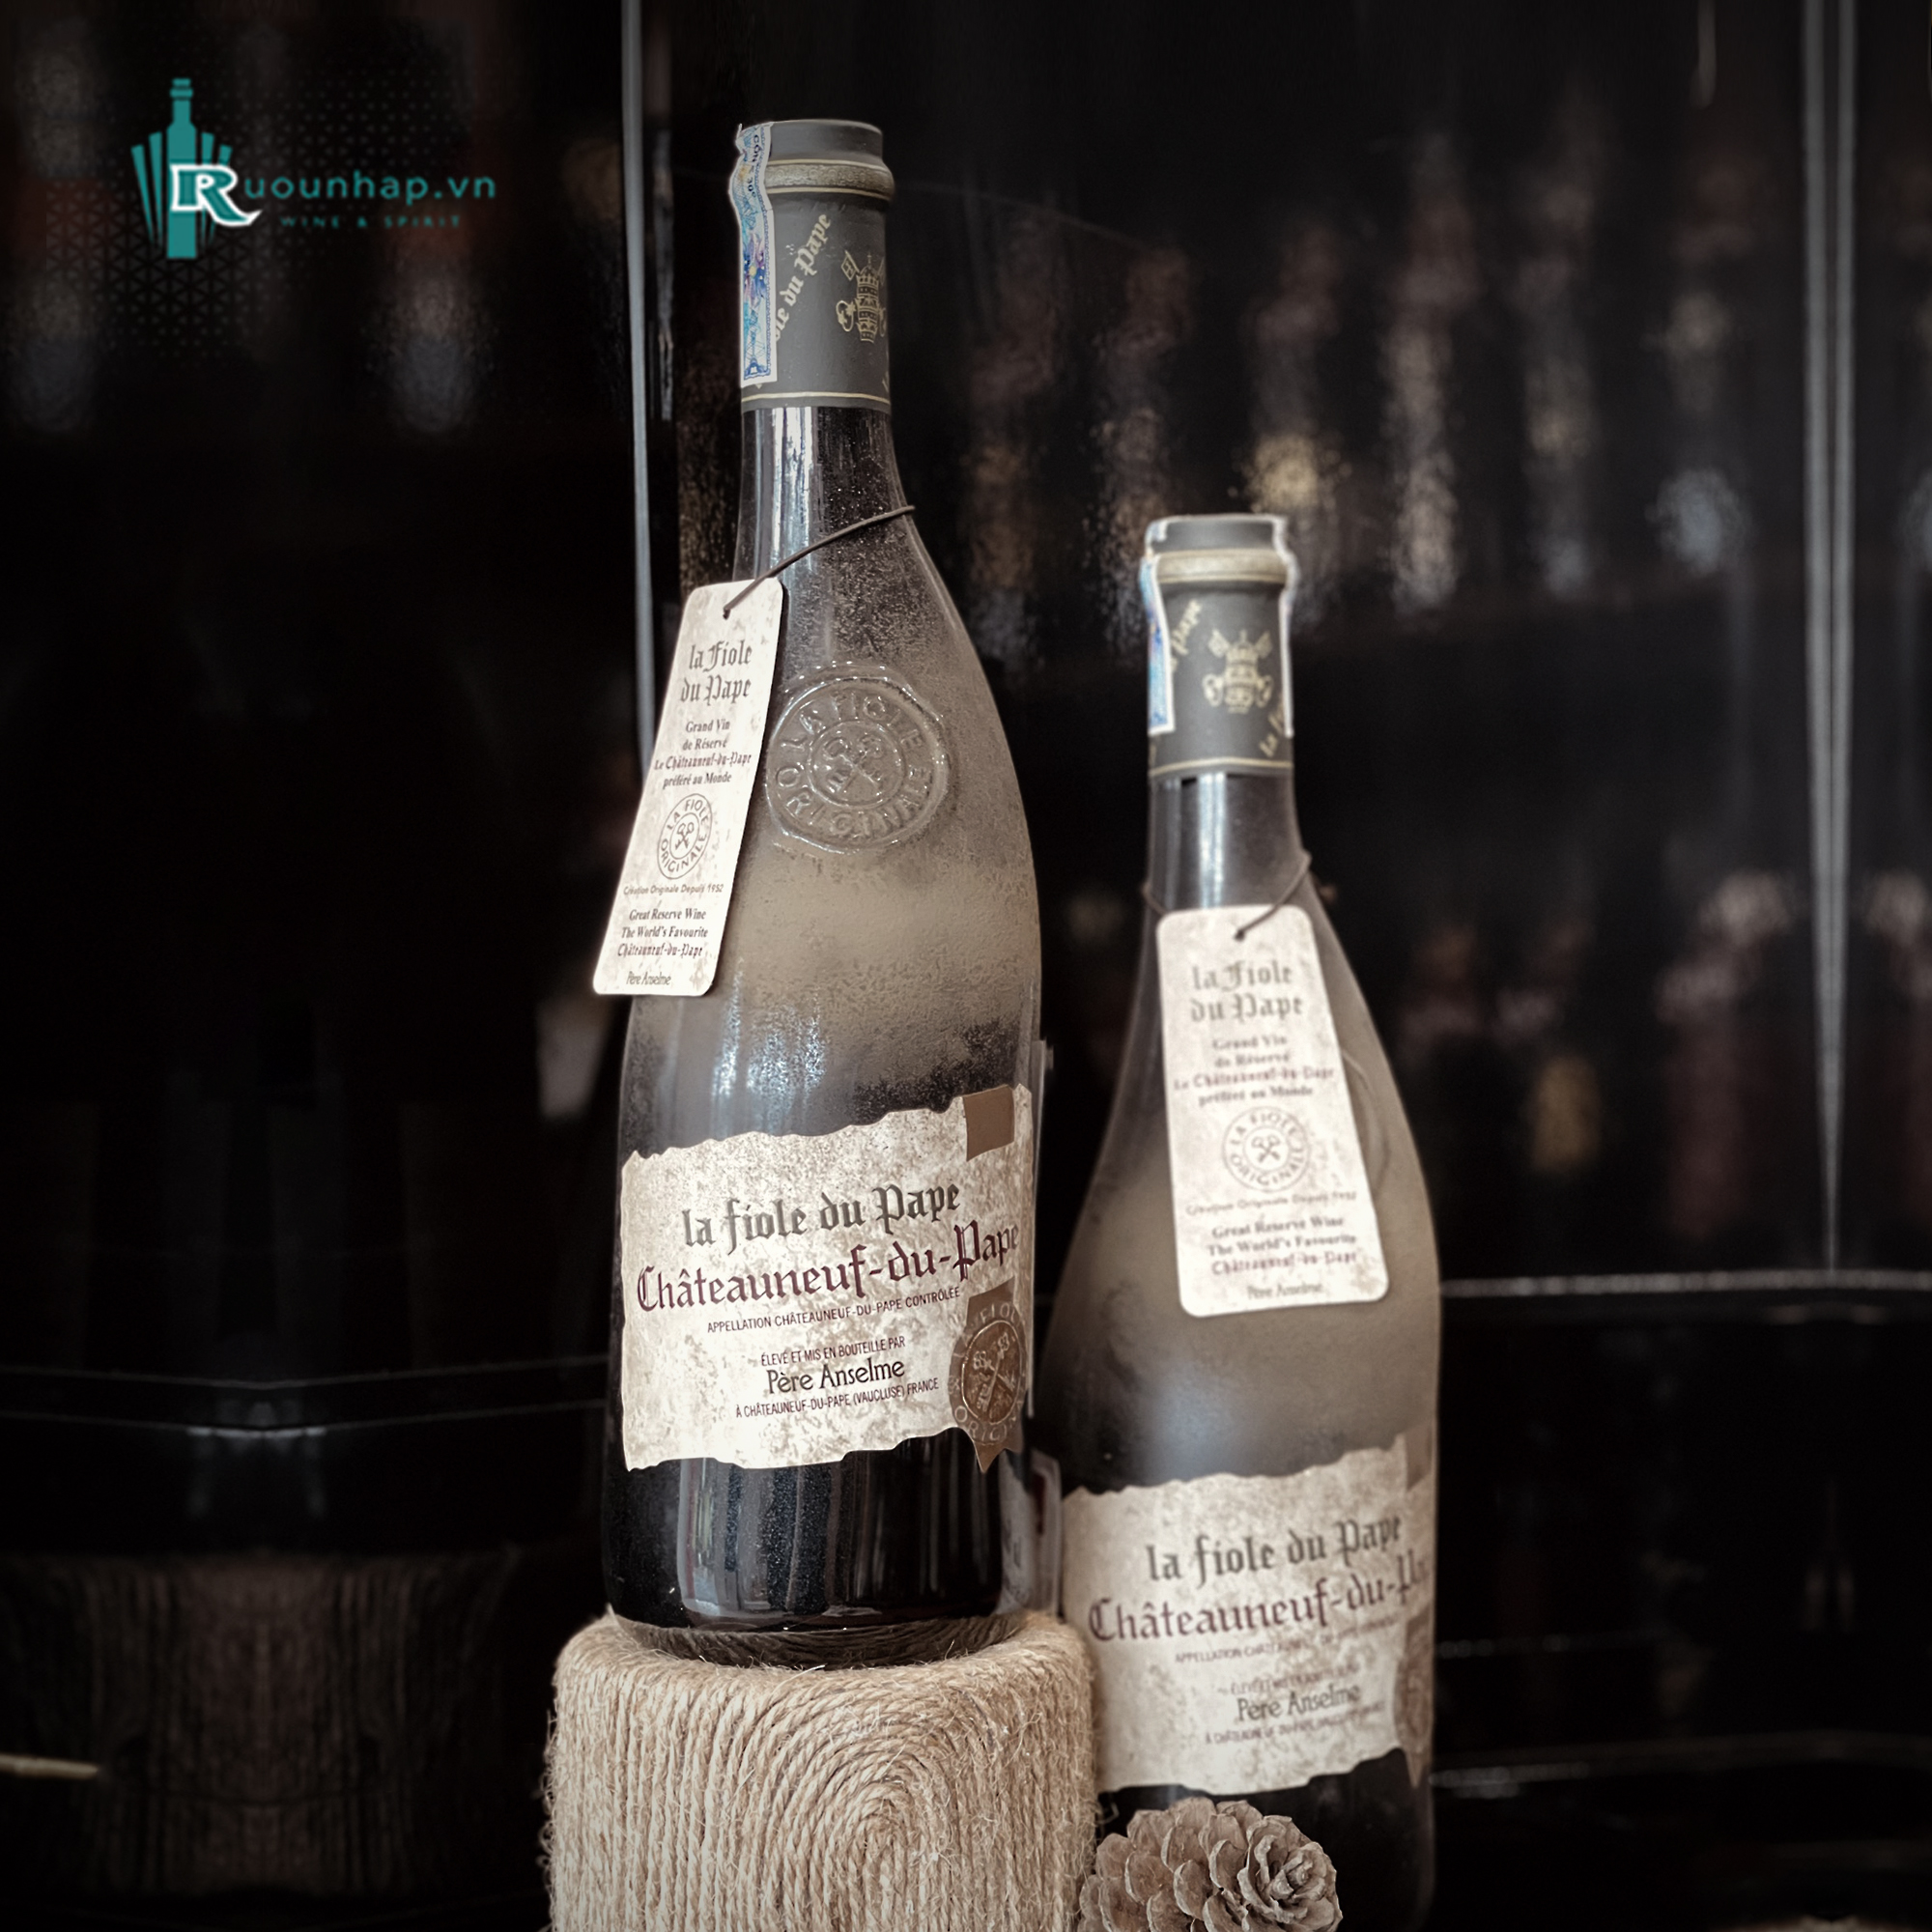 Rượu Vang Chateauneuf du Pape La Fiole Du Pape Cổ Vẹo
